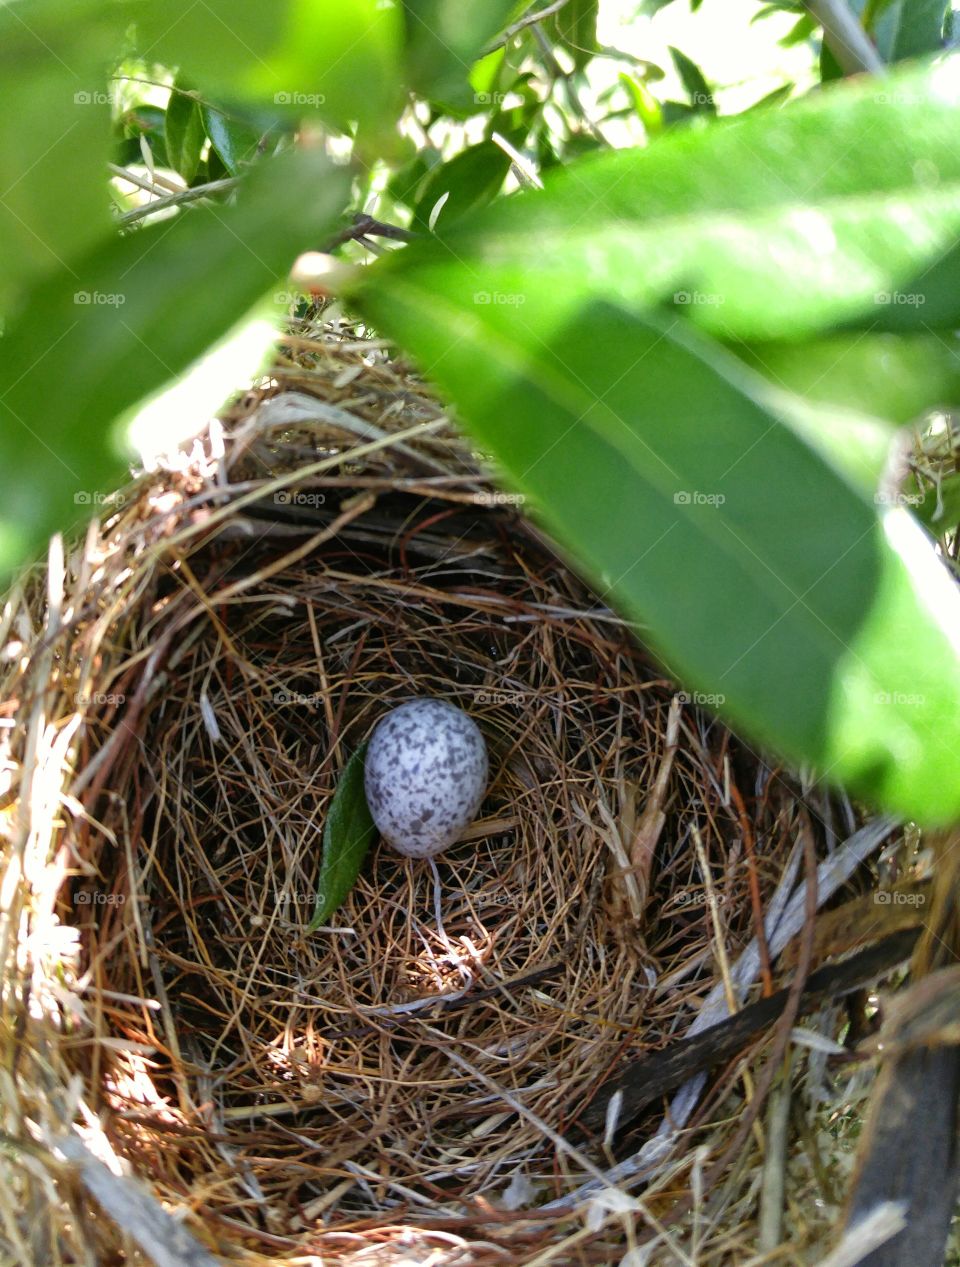 cardinals nest